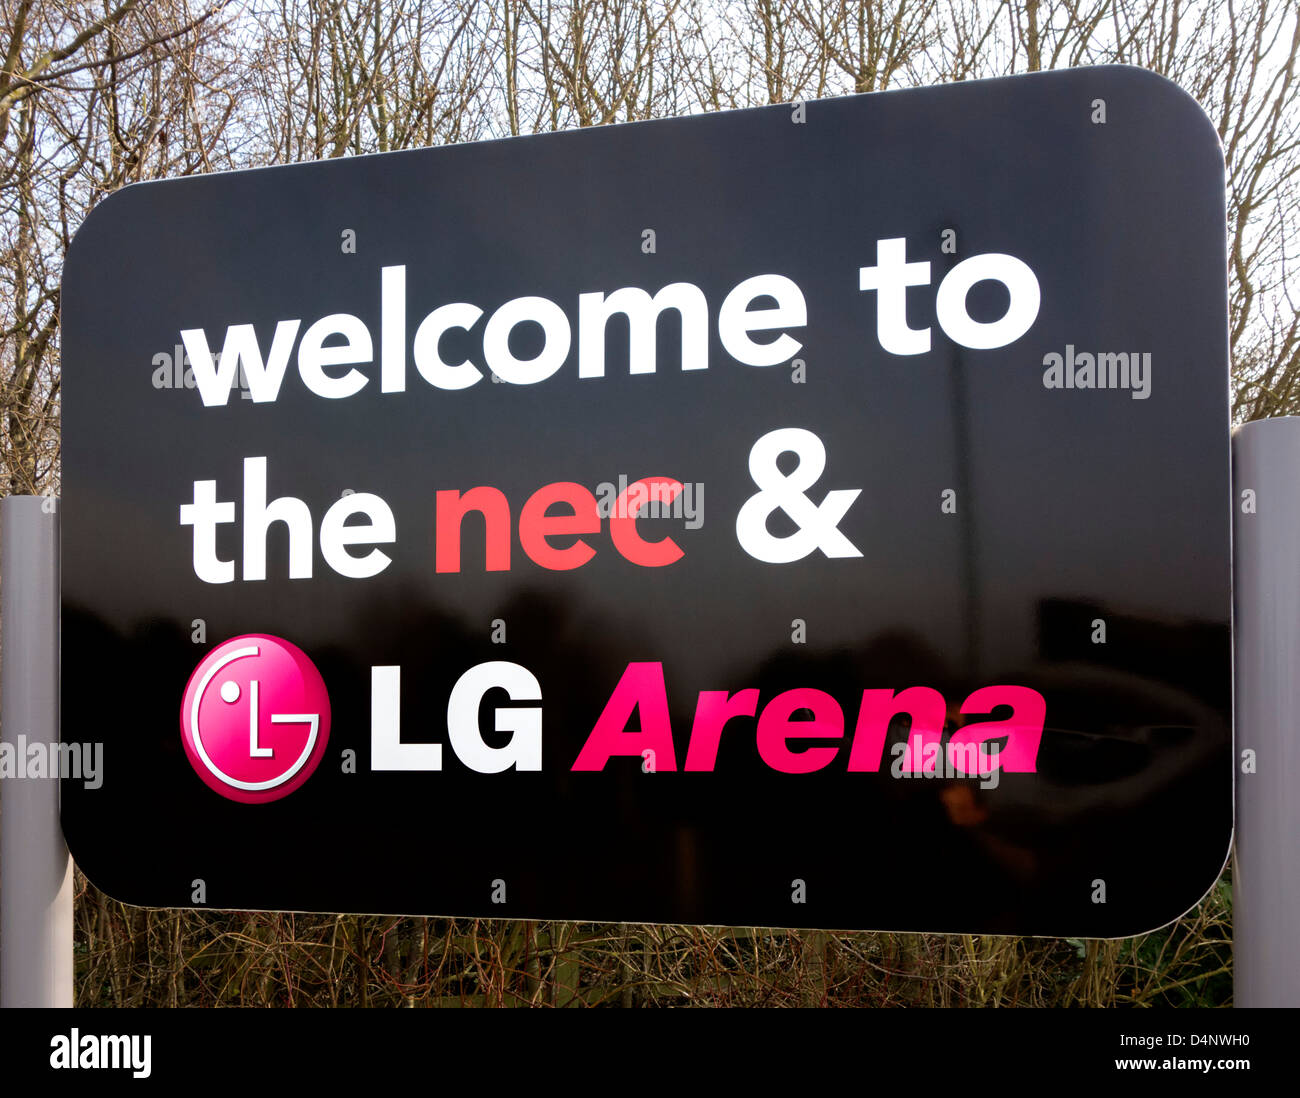 Melden Sie sich am Eingang zum NEC (National Exhibition Centre) und LG Arena, Birmingham, West Midlands, UK Stockfoto